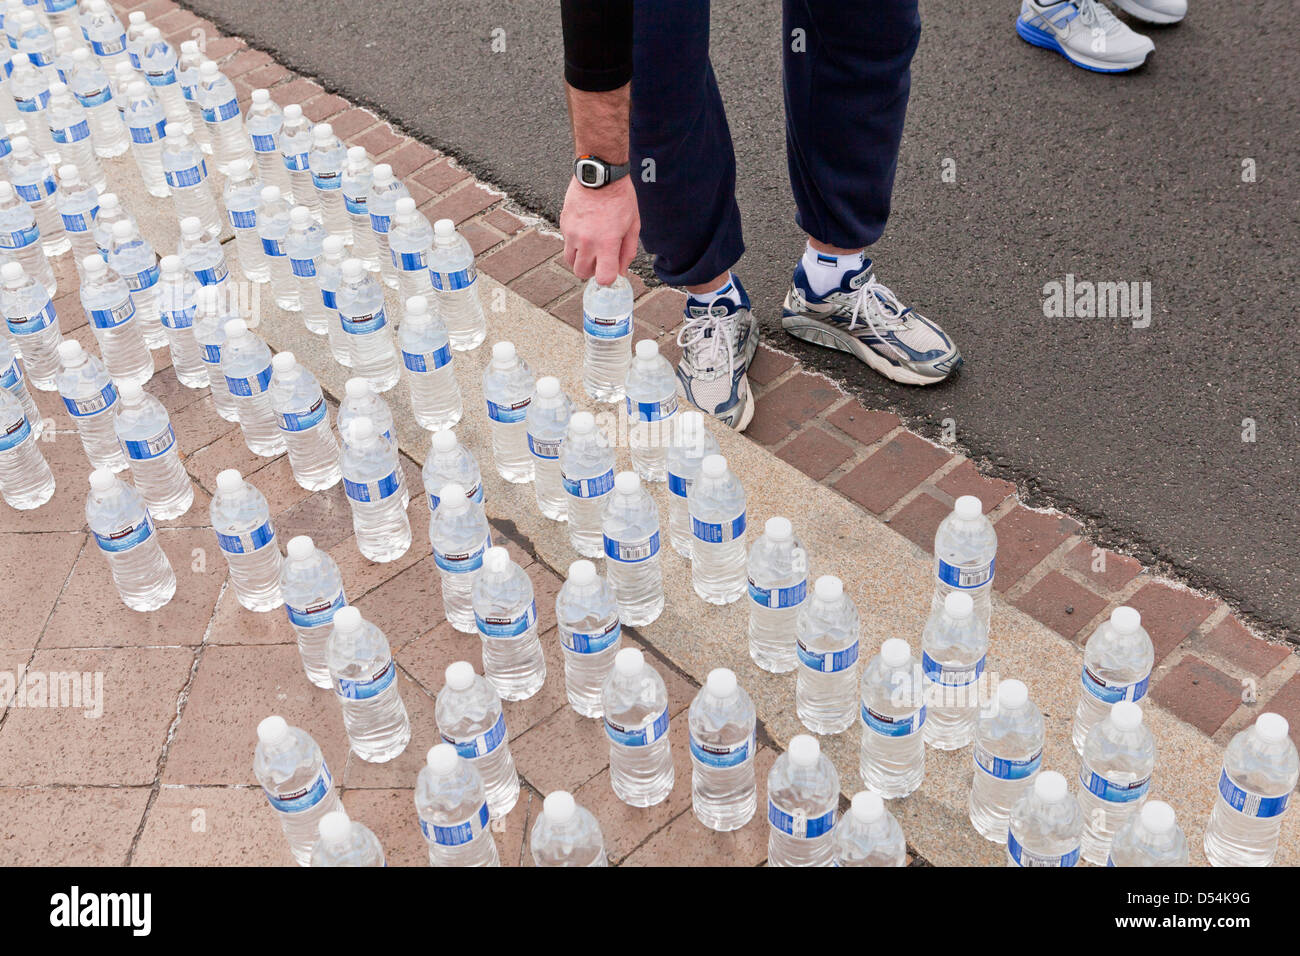 Läufer, die Abholung in Flaschen abgefülltes Wasser nach dem Rennen Stockfoto